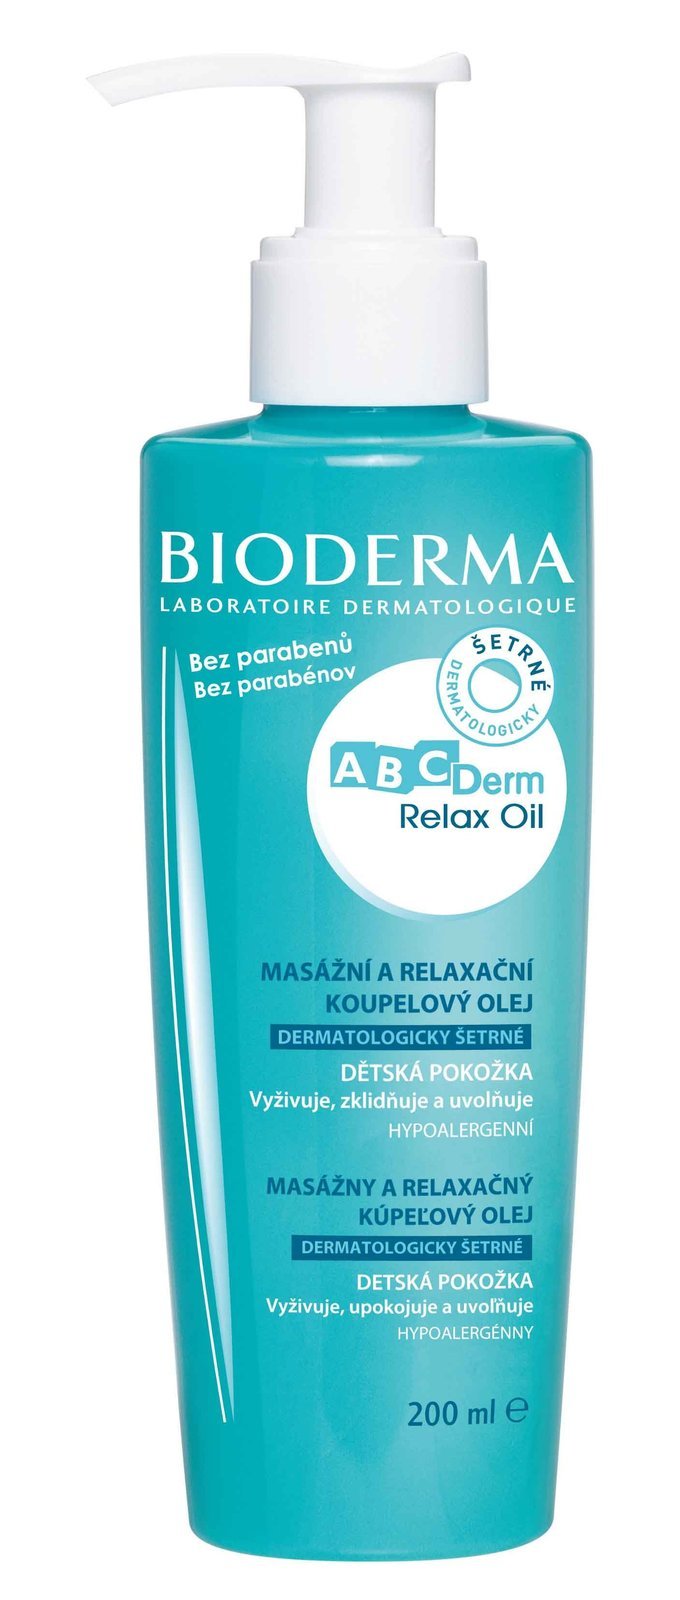 Suchý masážní relaxační a koupelový olej pro péči o jemnou dětskou pokožku Bioderma, 329 Kč